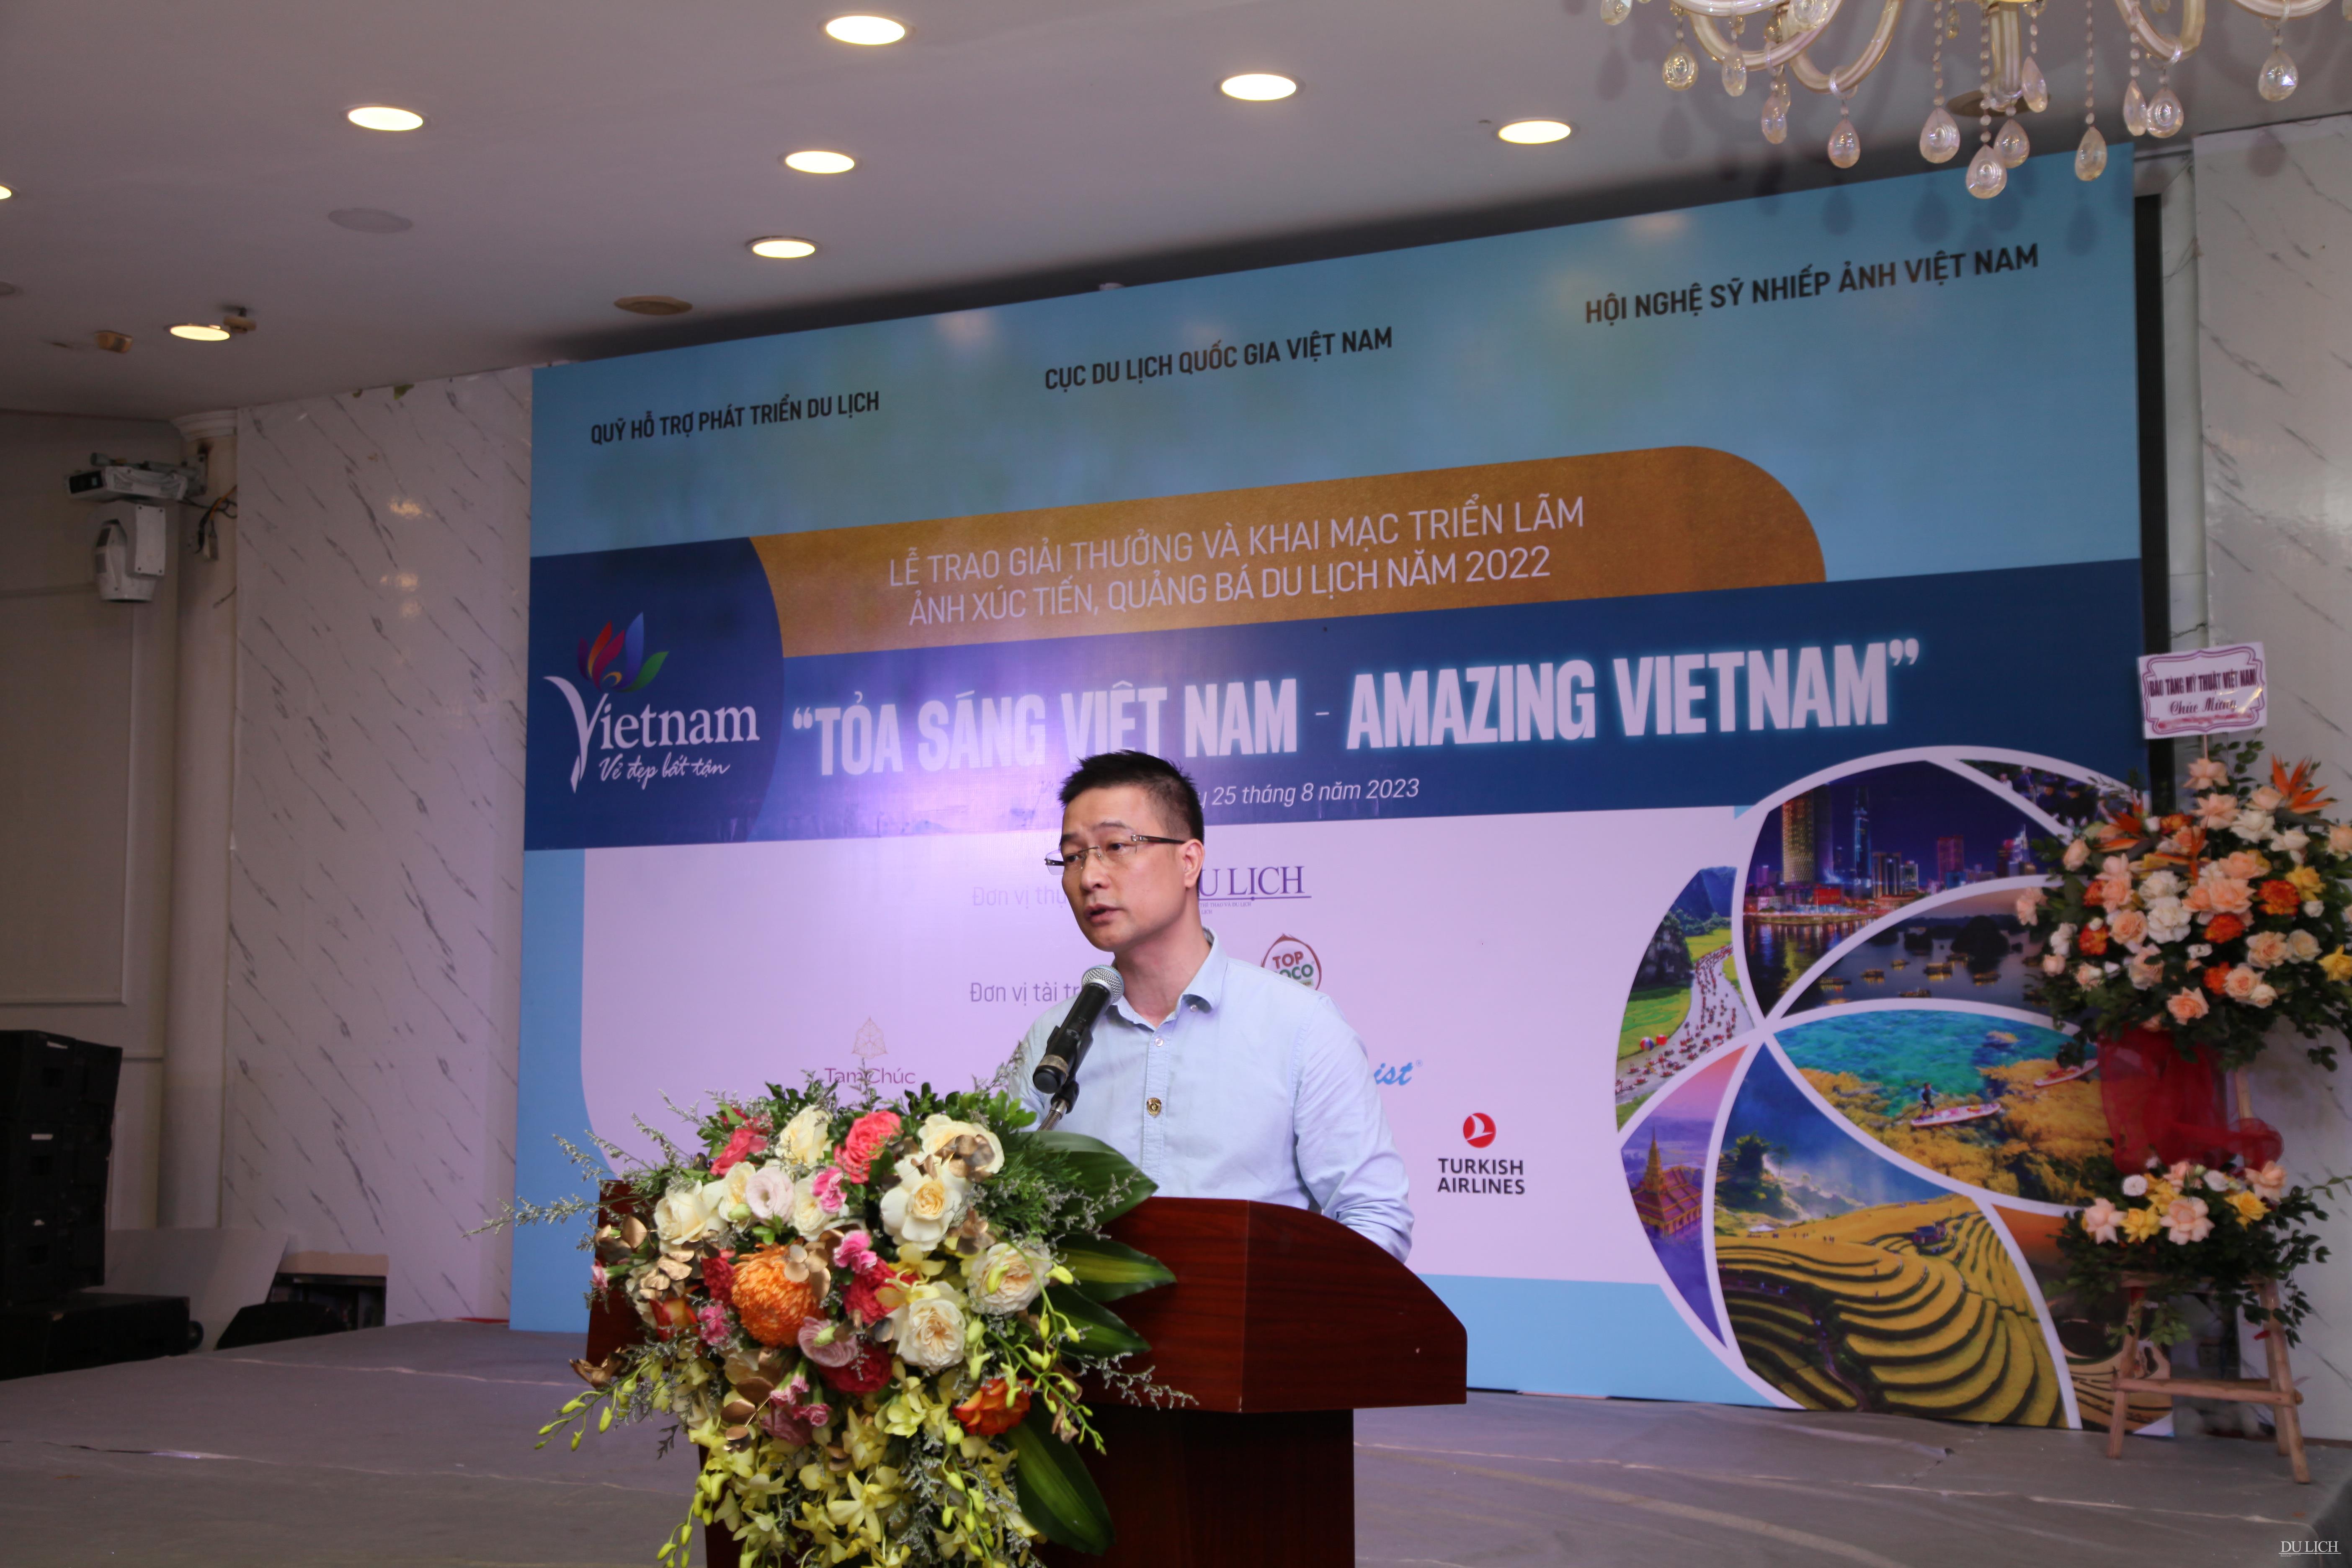  Phó trưởng Ban Sáng tác - Triển lãm Hội NSNAVN Nguyễn Xuân Chính phát biểu